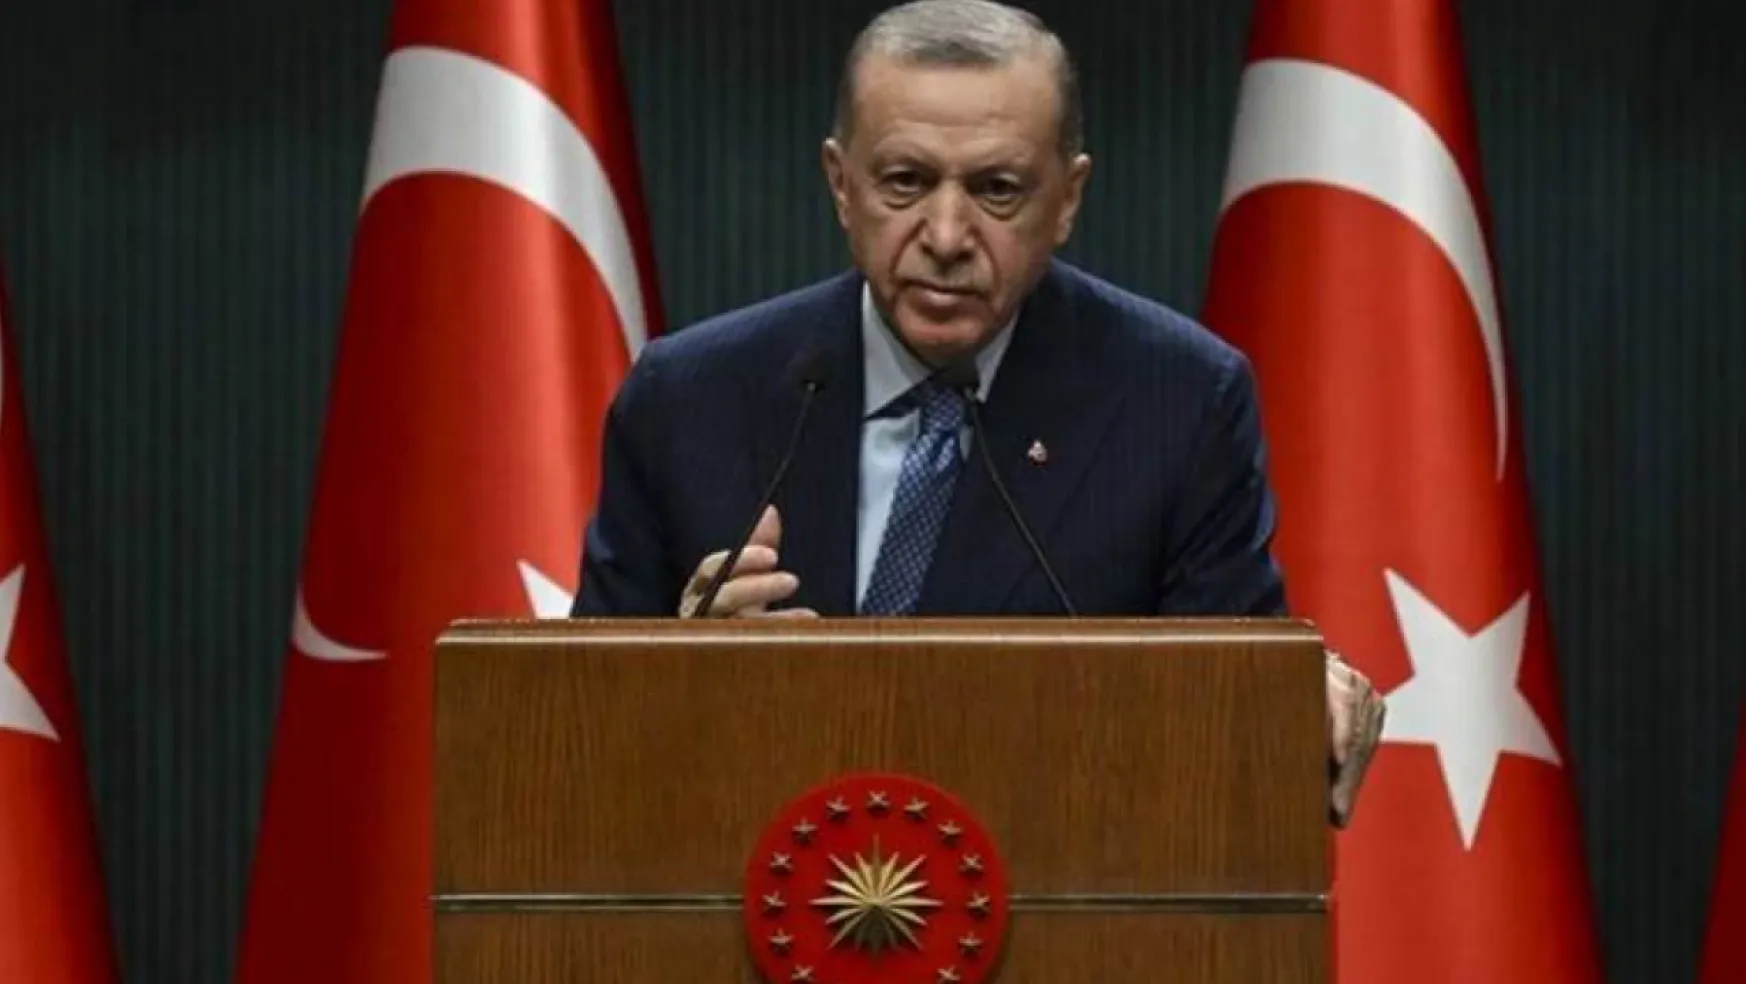 Büyük zaferin 109. yıldönümü. Cumhurbaşkanı Erdoğan'dan 18 Mart mesajı